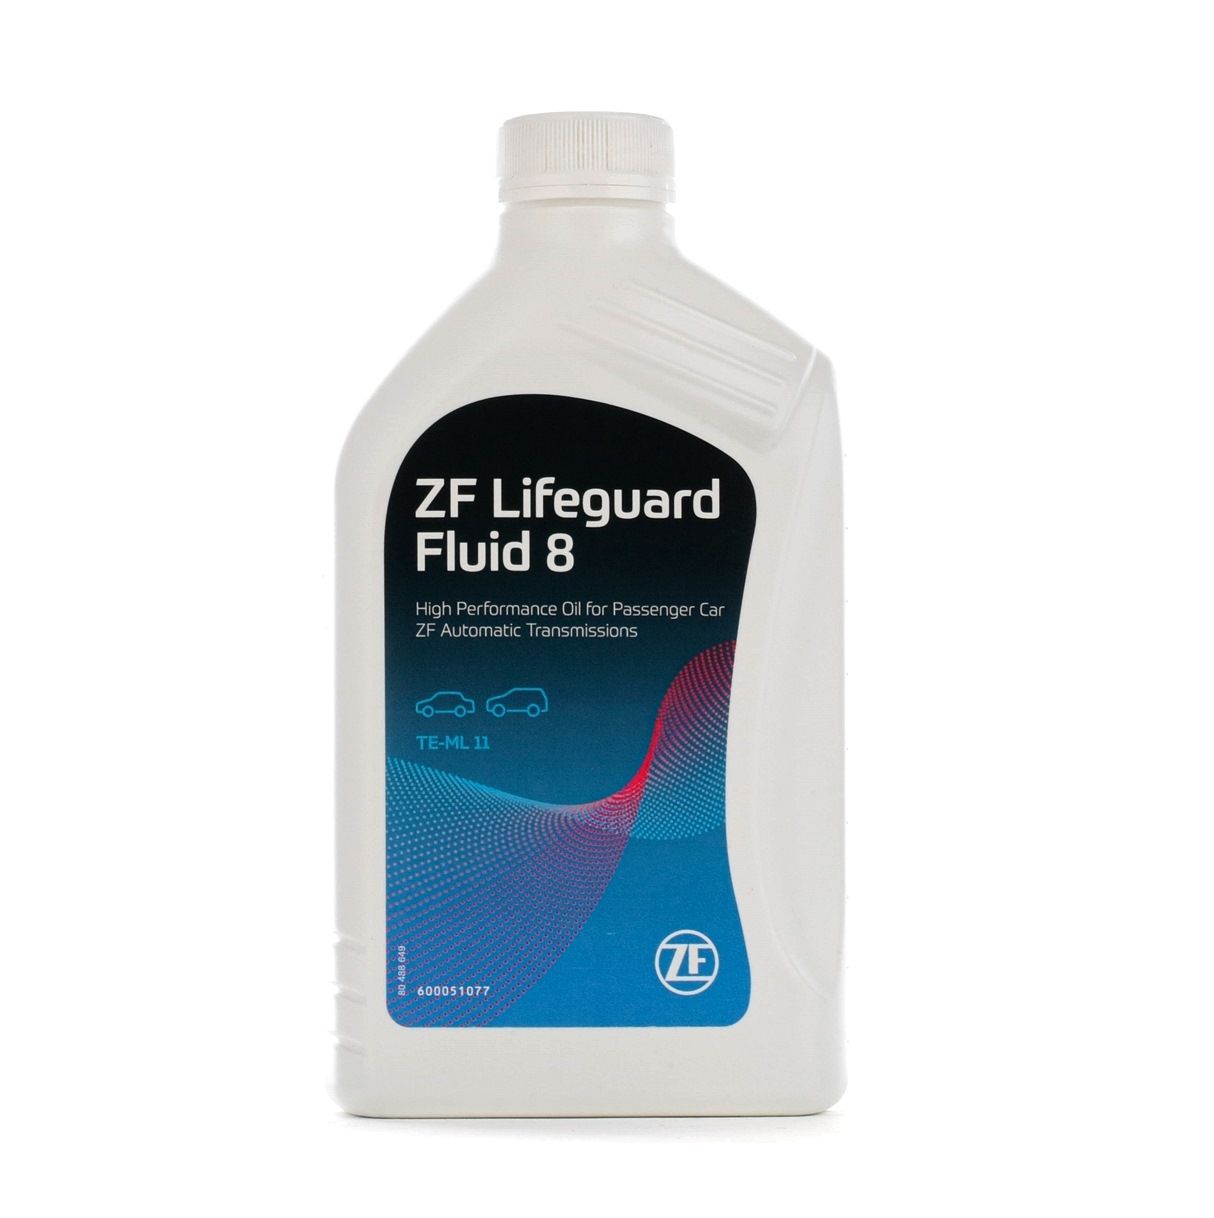 ZFLifeGuardFluid8 ZF GETRIEBE LifeGuardFluid 8 ATF 8HP, 1l, grün Automatikgetriebeöl S671.090.312 günstig kaufen